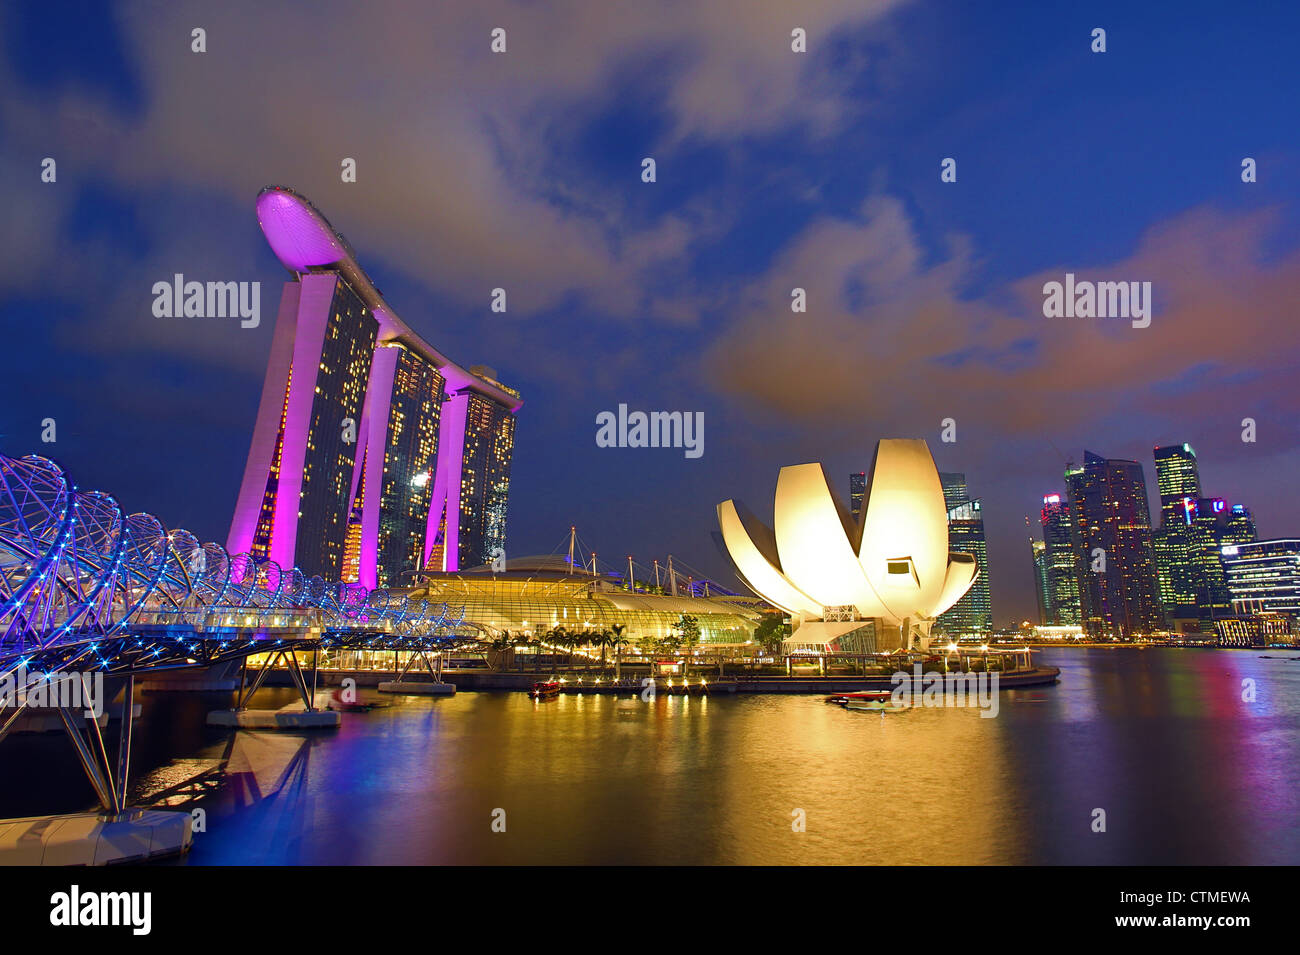 Helix bridge y el Marina Bay Sands Hotel de lujo de 5 estrellas al atardecer en Marina Bay, Singapur Foto de stock